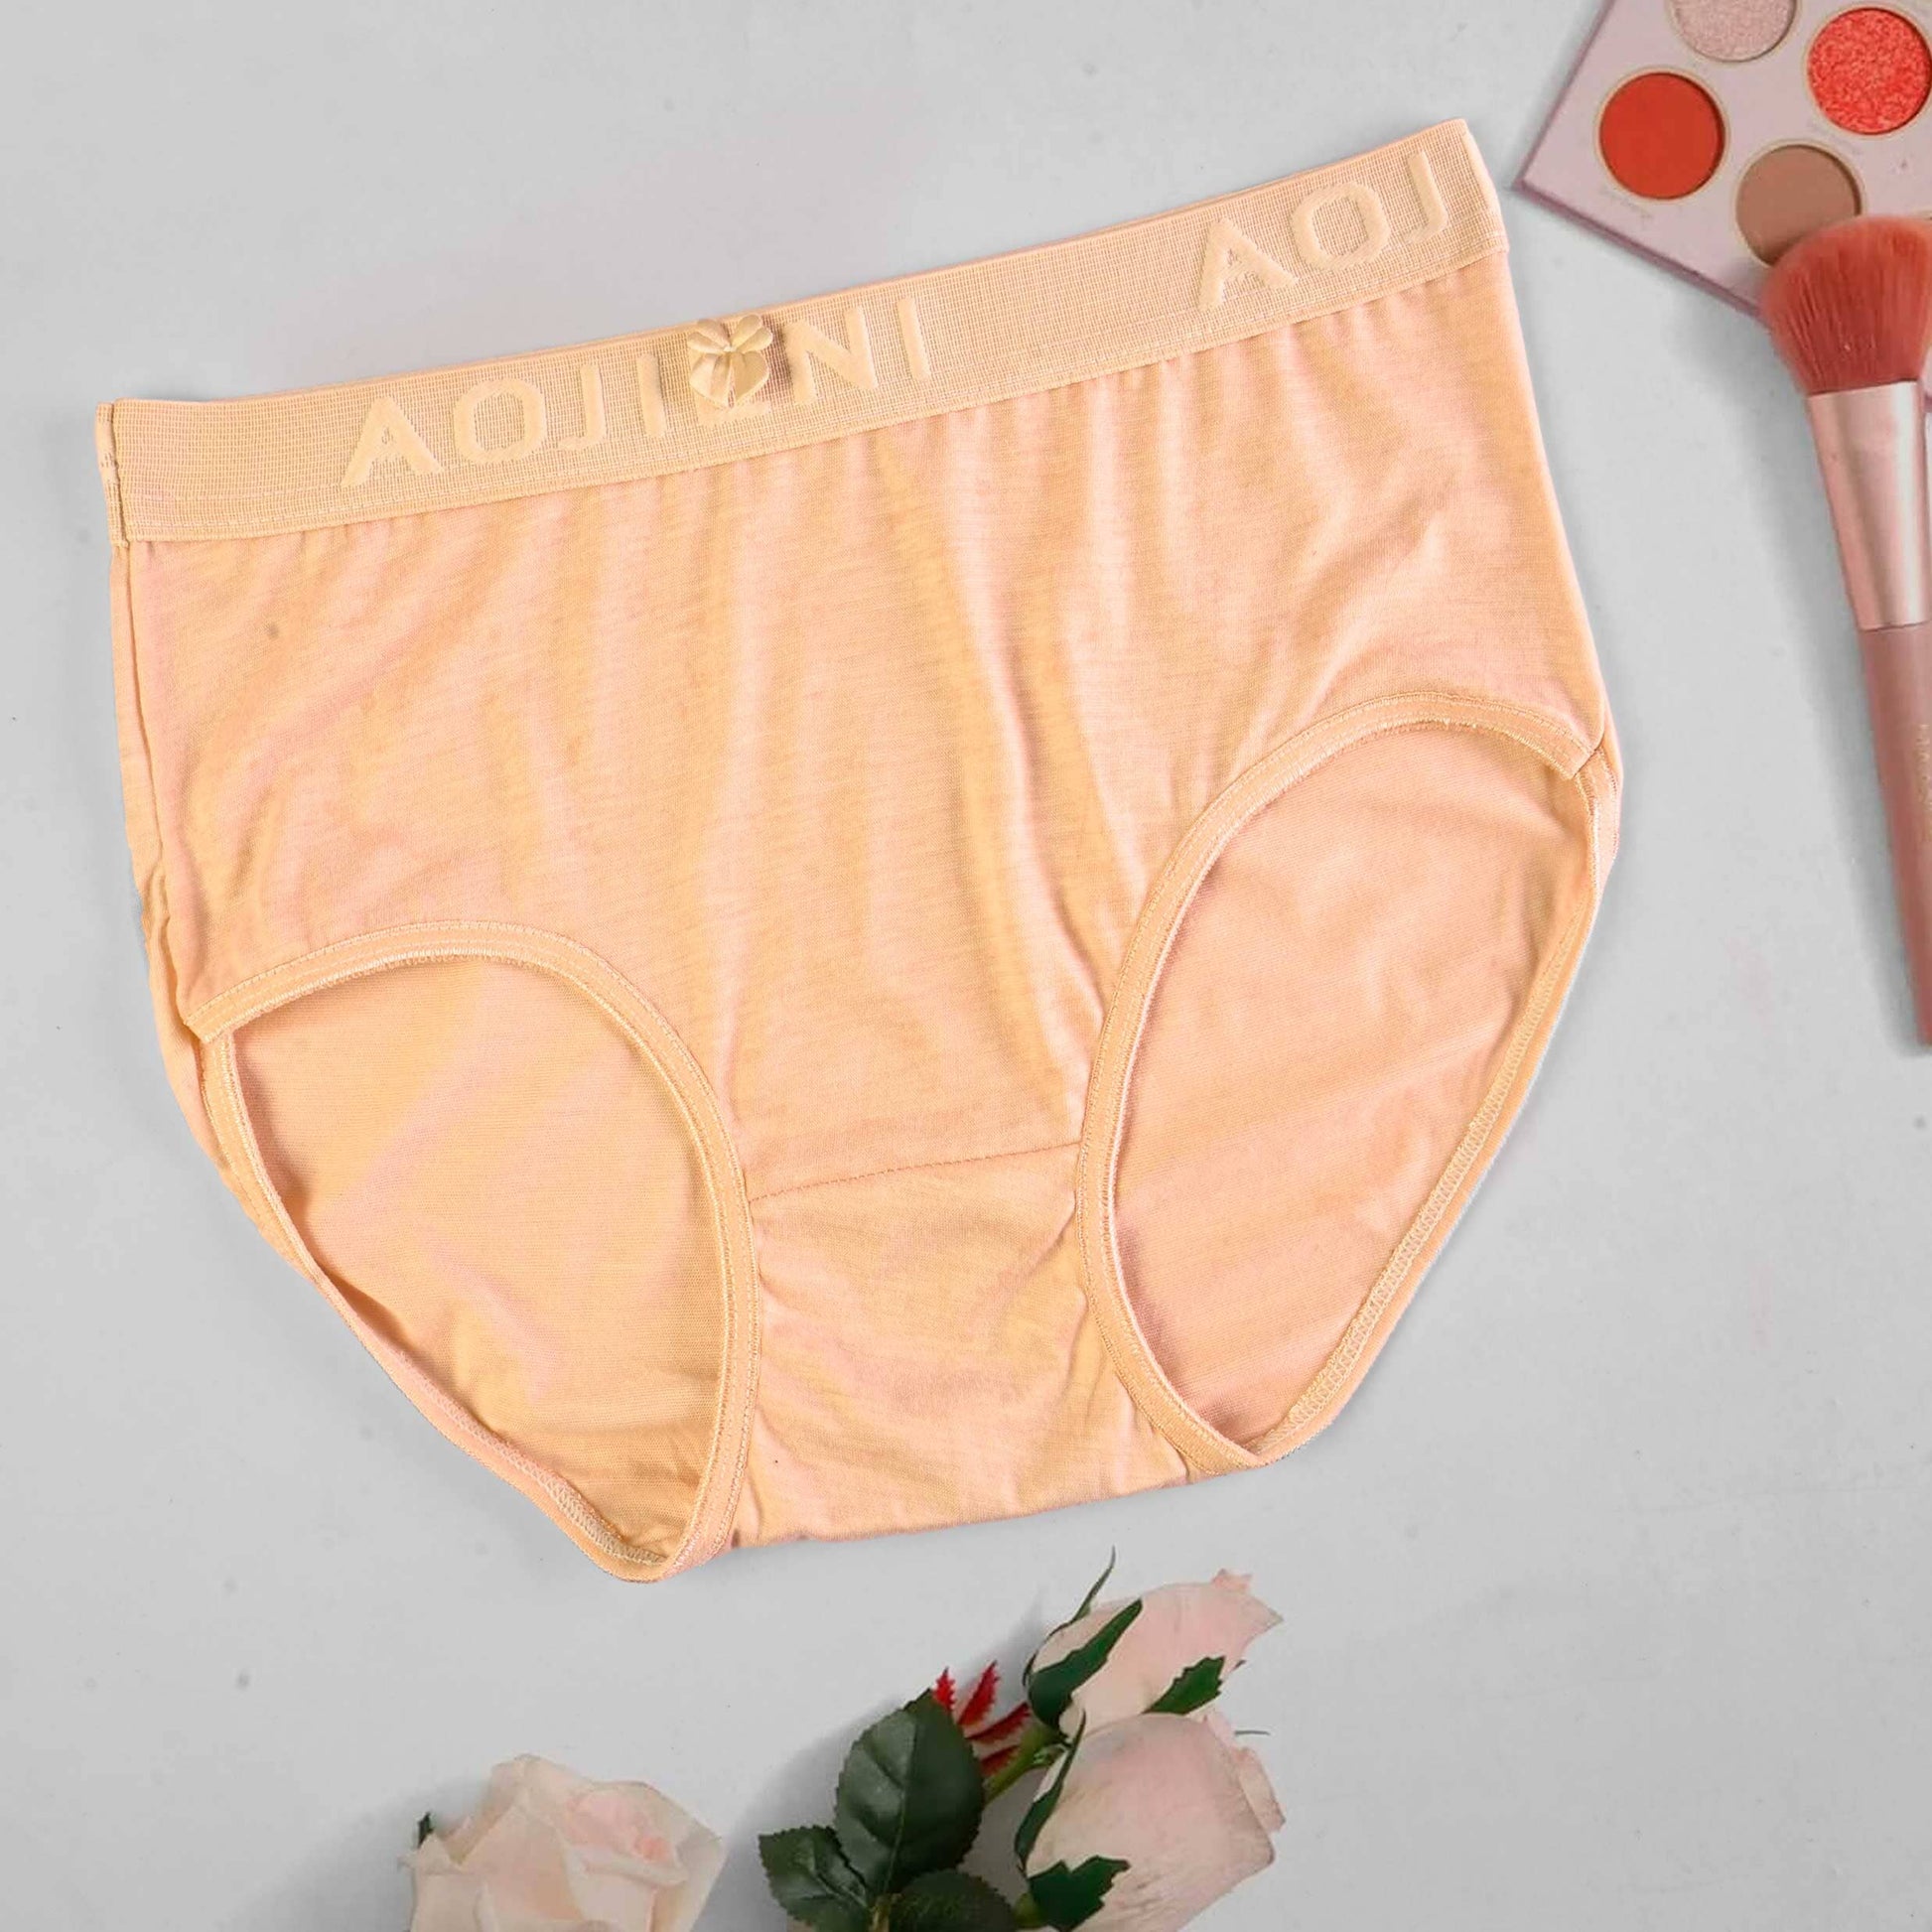 Aojieni Women's Classic Underwear Women's Lingerie RAM Peach M 